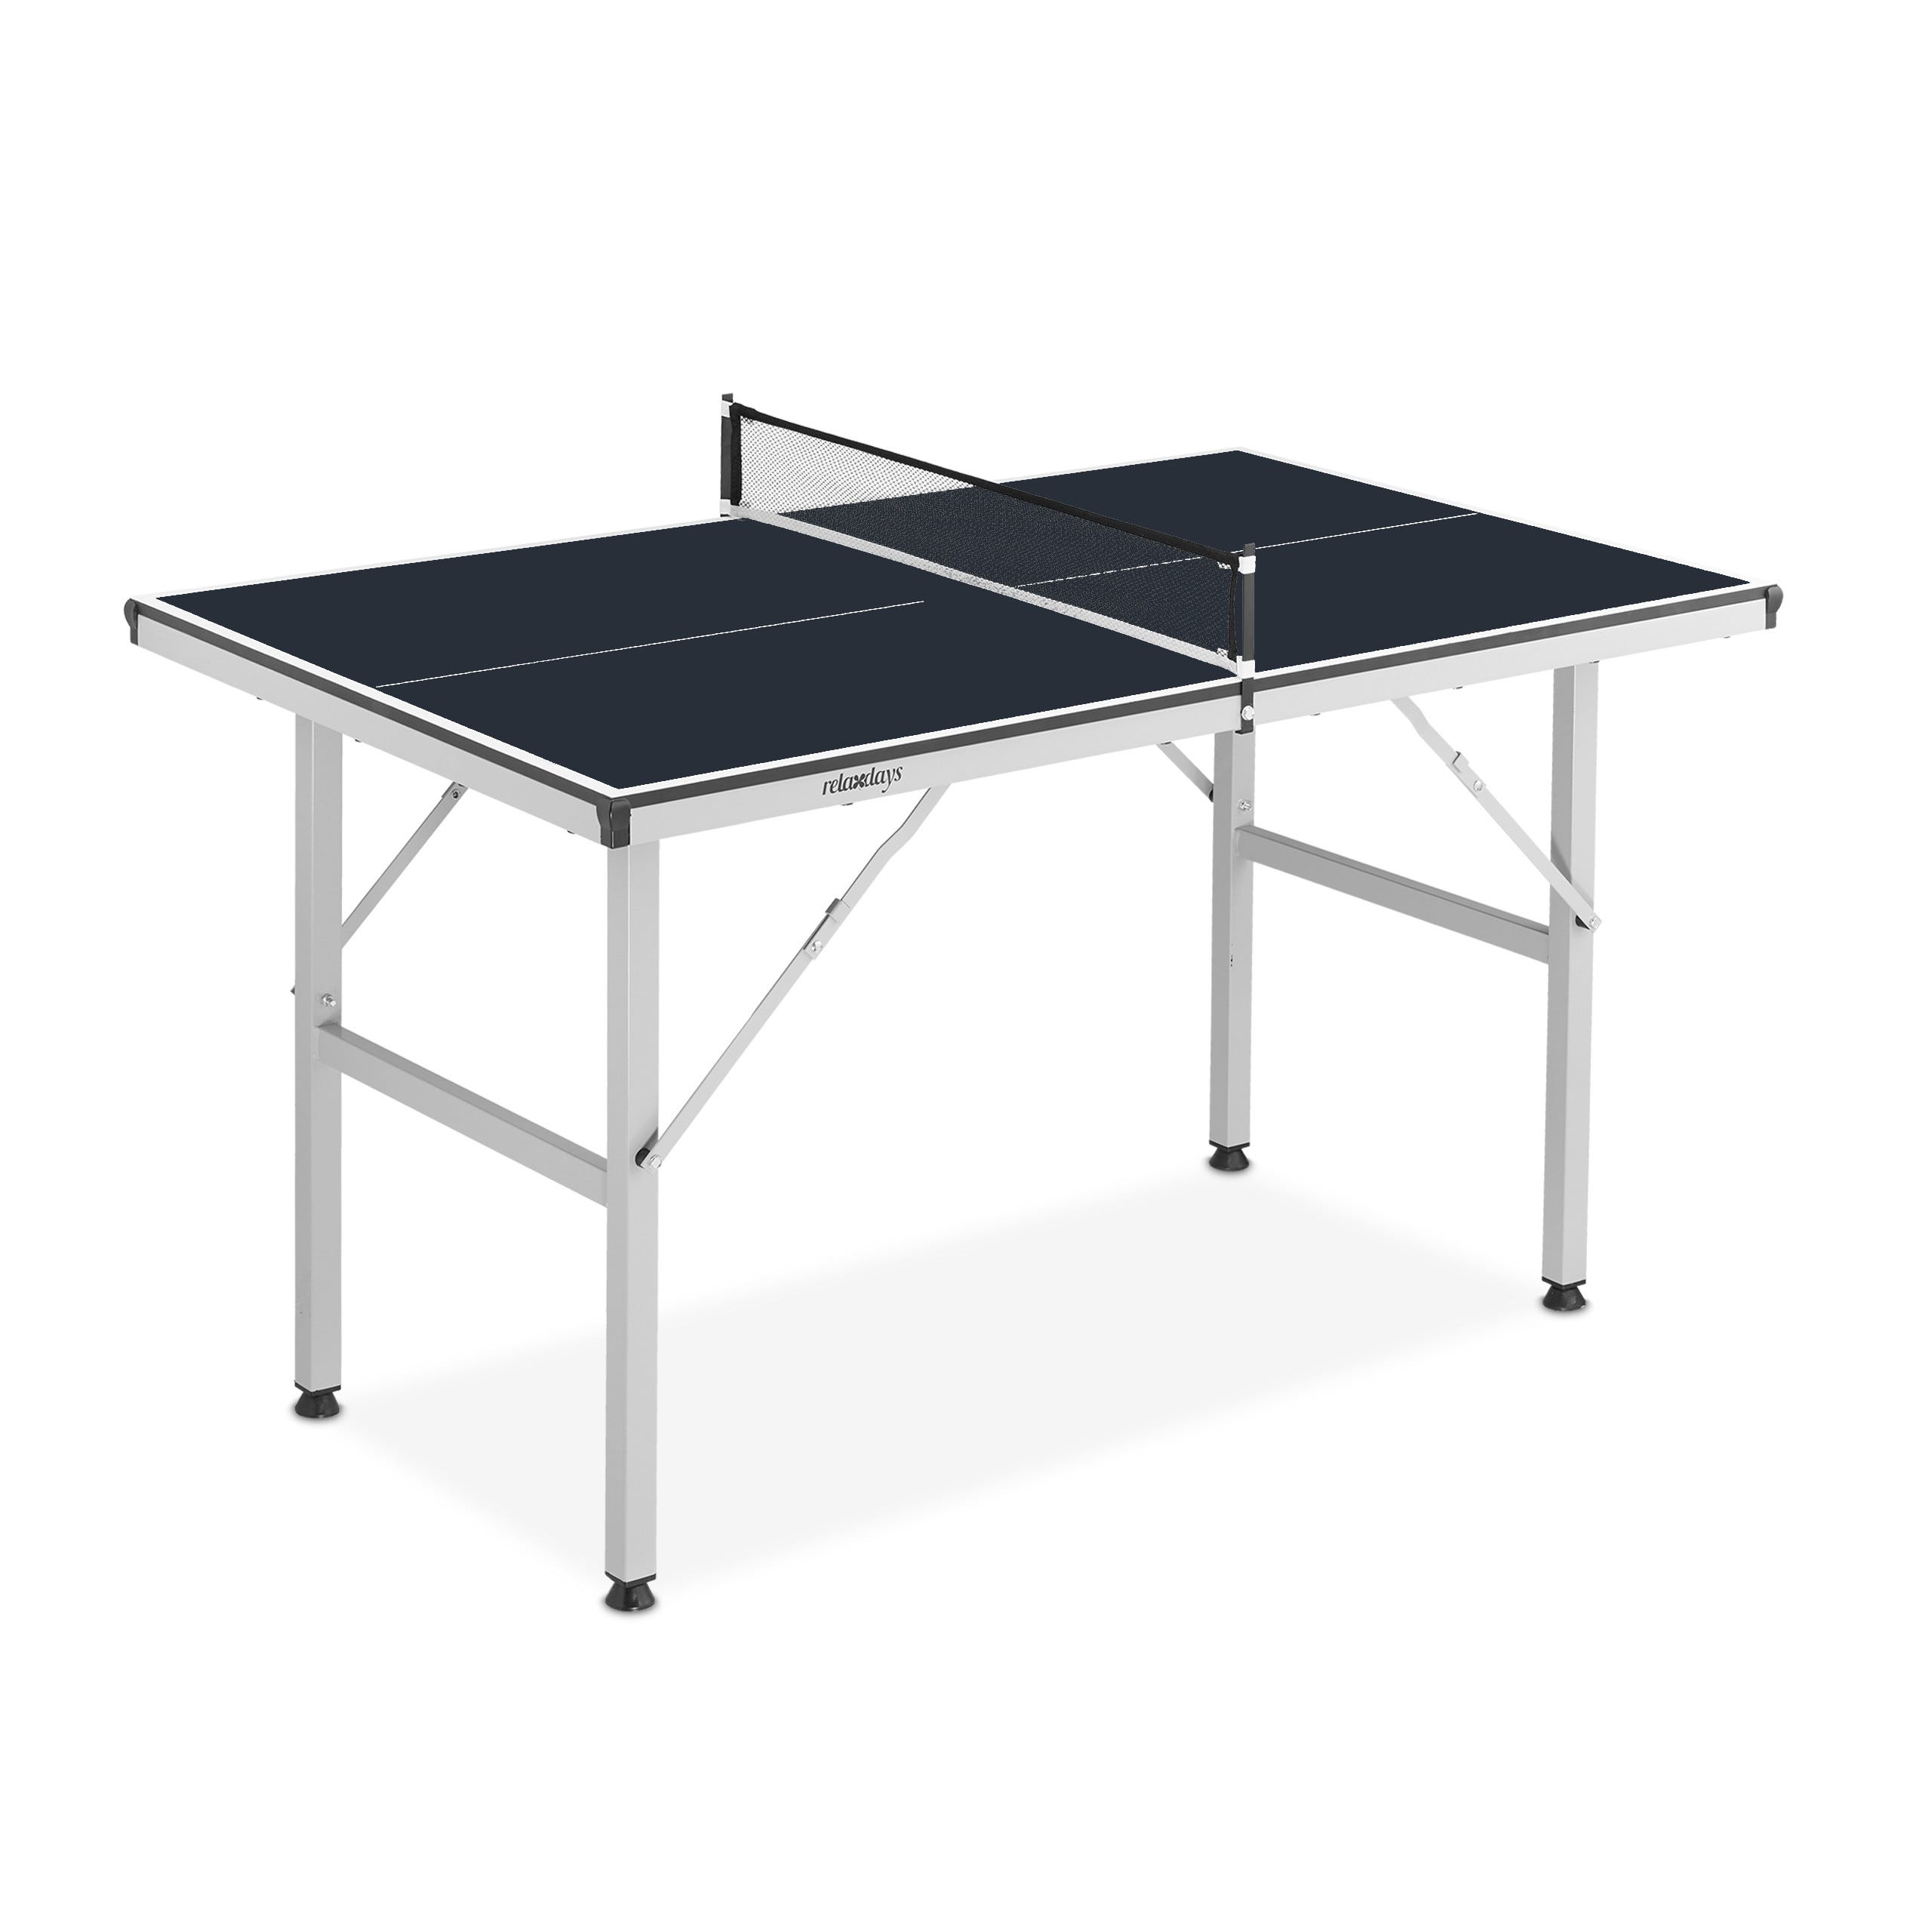 Relaxdays Kit pratique pour jouer au ping-pong, table pliable, avec filet,  72 x 75 x 125 cm, intérieur, noir